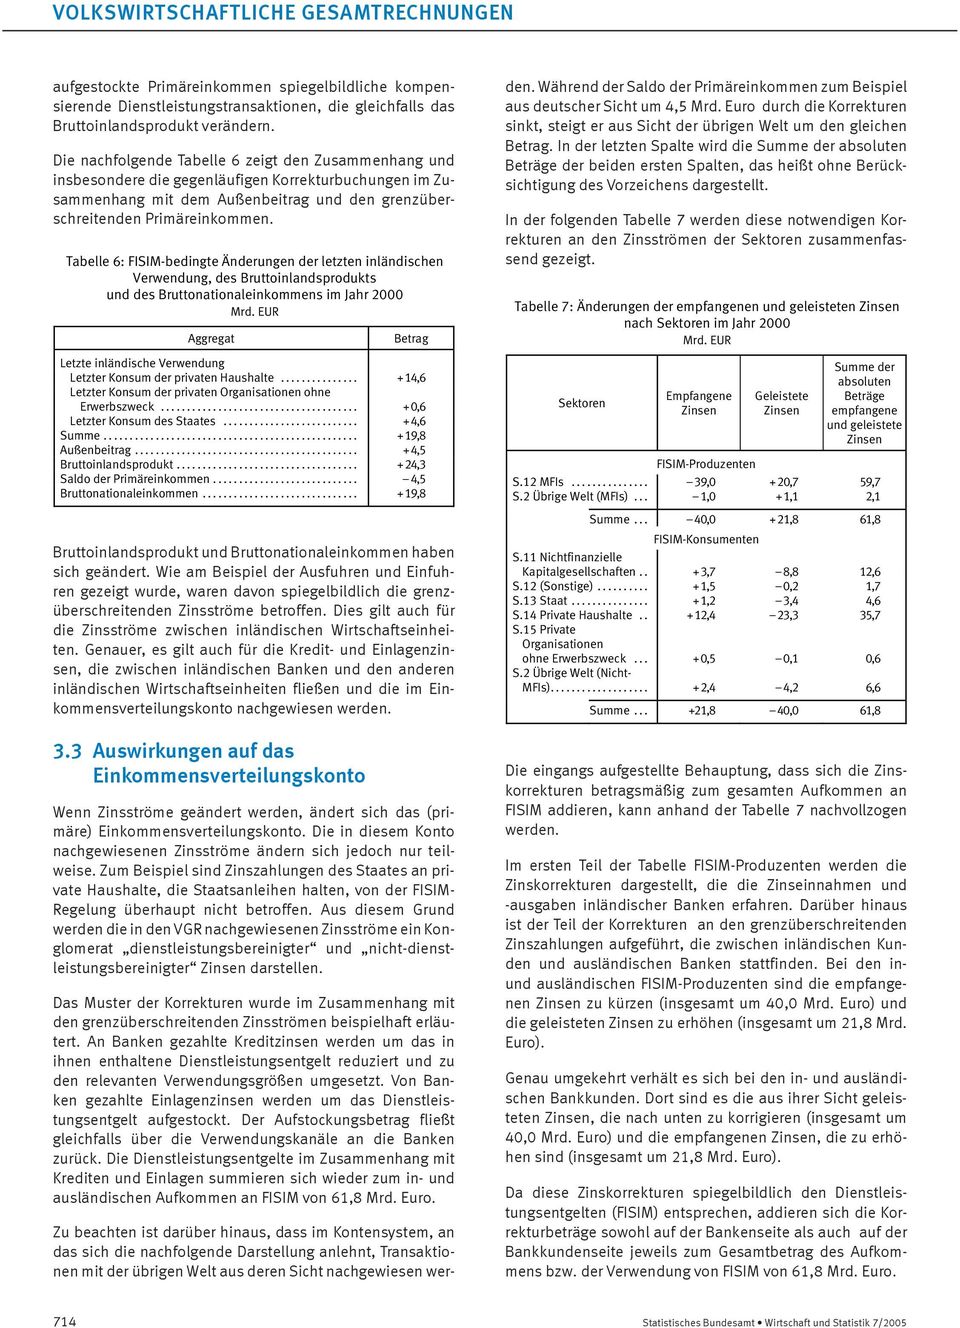 Tabelle 6: -bedingte Änderungen der letzten inländischen Verwendung, des Bruttoinlandsprodukts und des Bruttonationaleinkommens im Jahr 2000 Aggregat Betrag Letzte inländische Verwendung Letzter